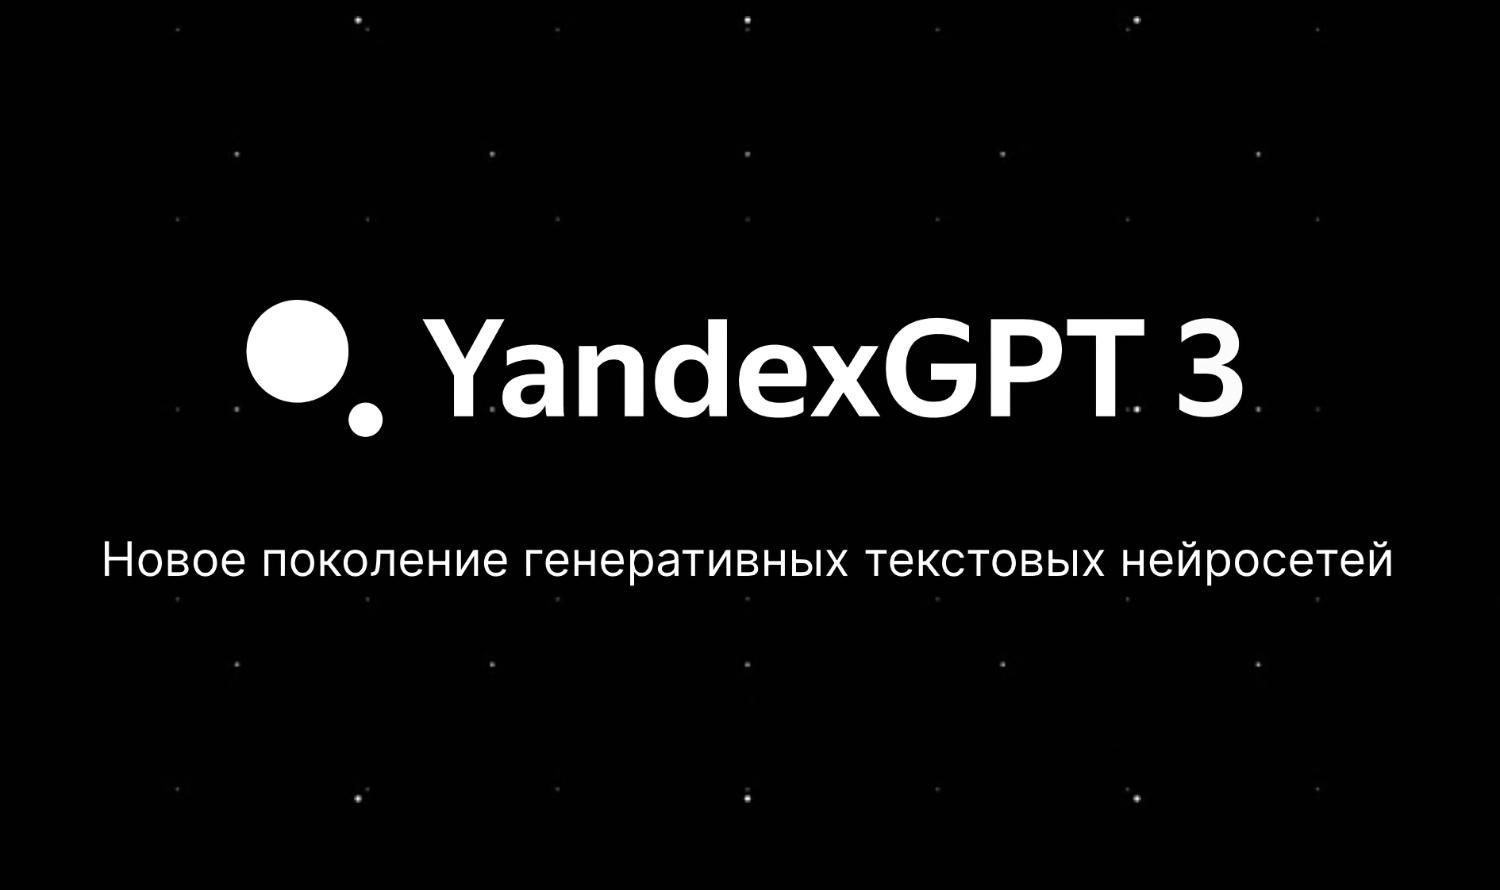 Яндекс открыл доступ к новейшей ИИ-модели YandexGPT 3 Pro